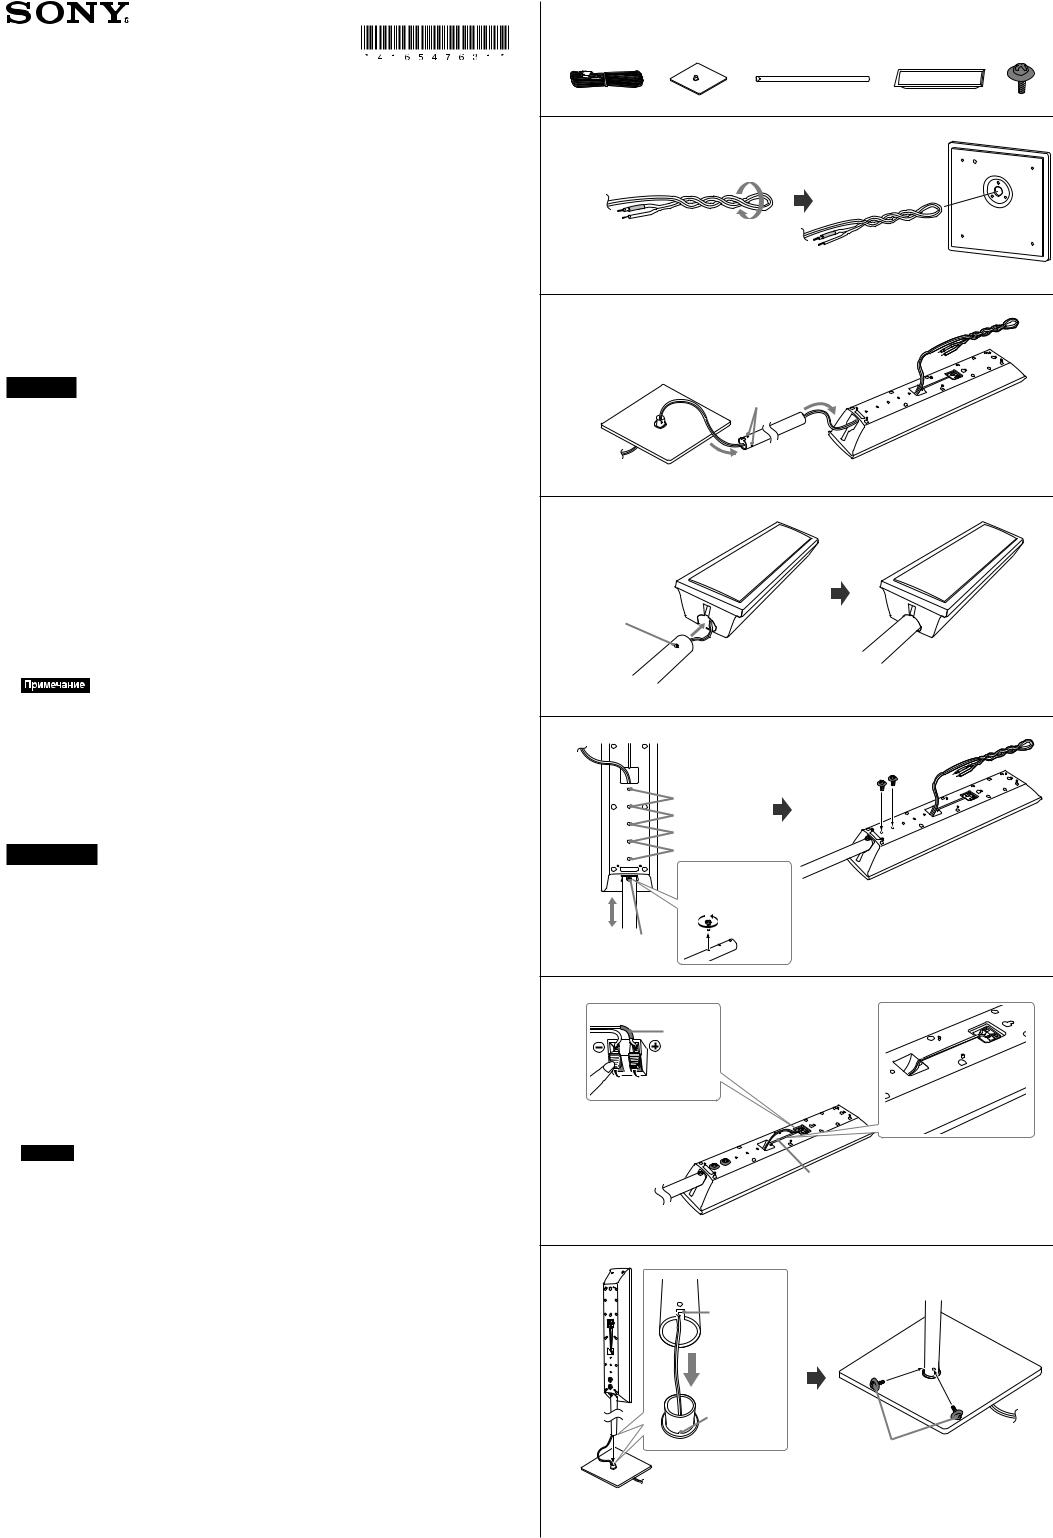 Sony DAV-TZ710 User Manual